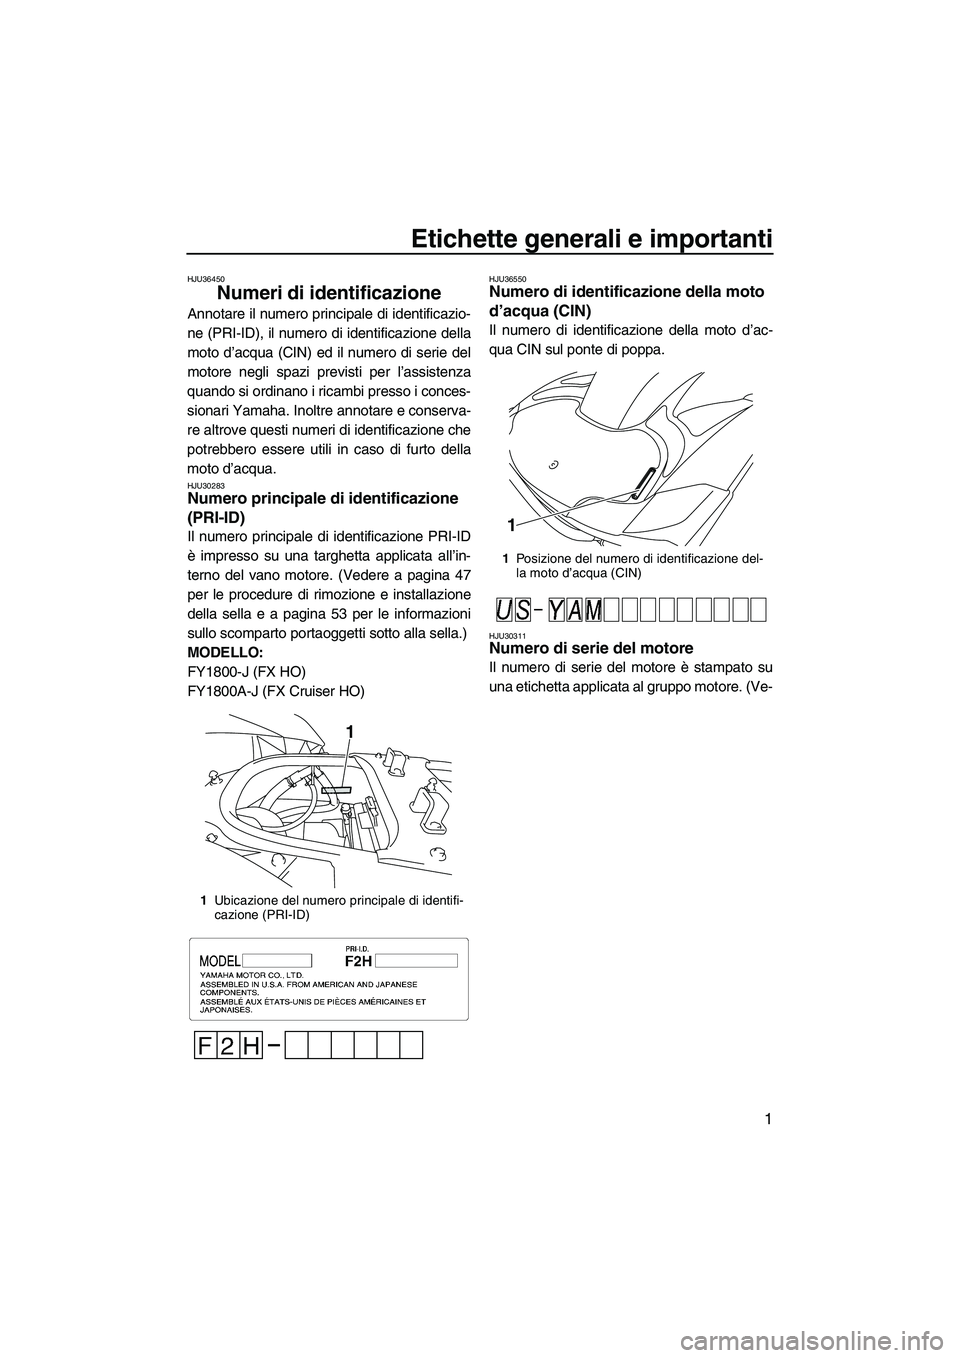 YAMAHA FX HO 2010  Manuale duso (in Italian) Etichette generali e importanti
1
HJU36450
Numeri di identificazione 
Annotare il numero principale di identificazio-
ne (PRI-ID), il numero di identificazione della
moto d’acqua (CIN) ed il numero 